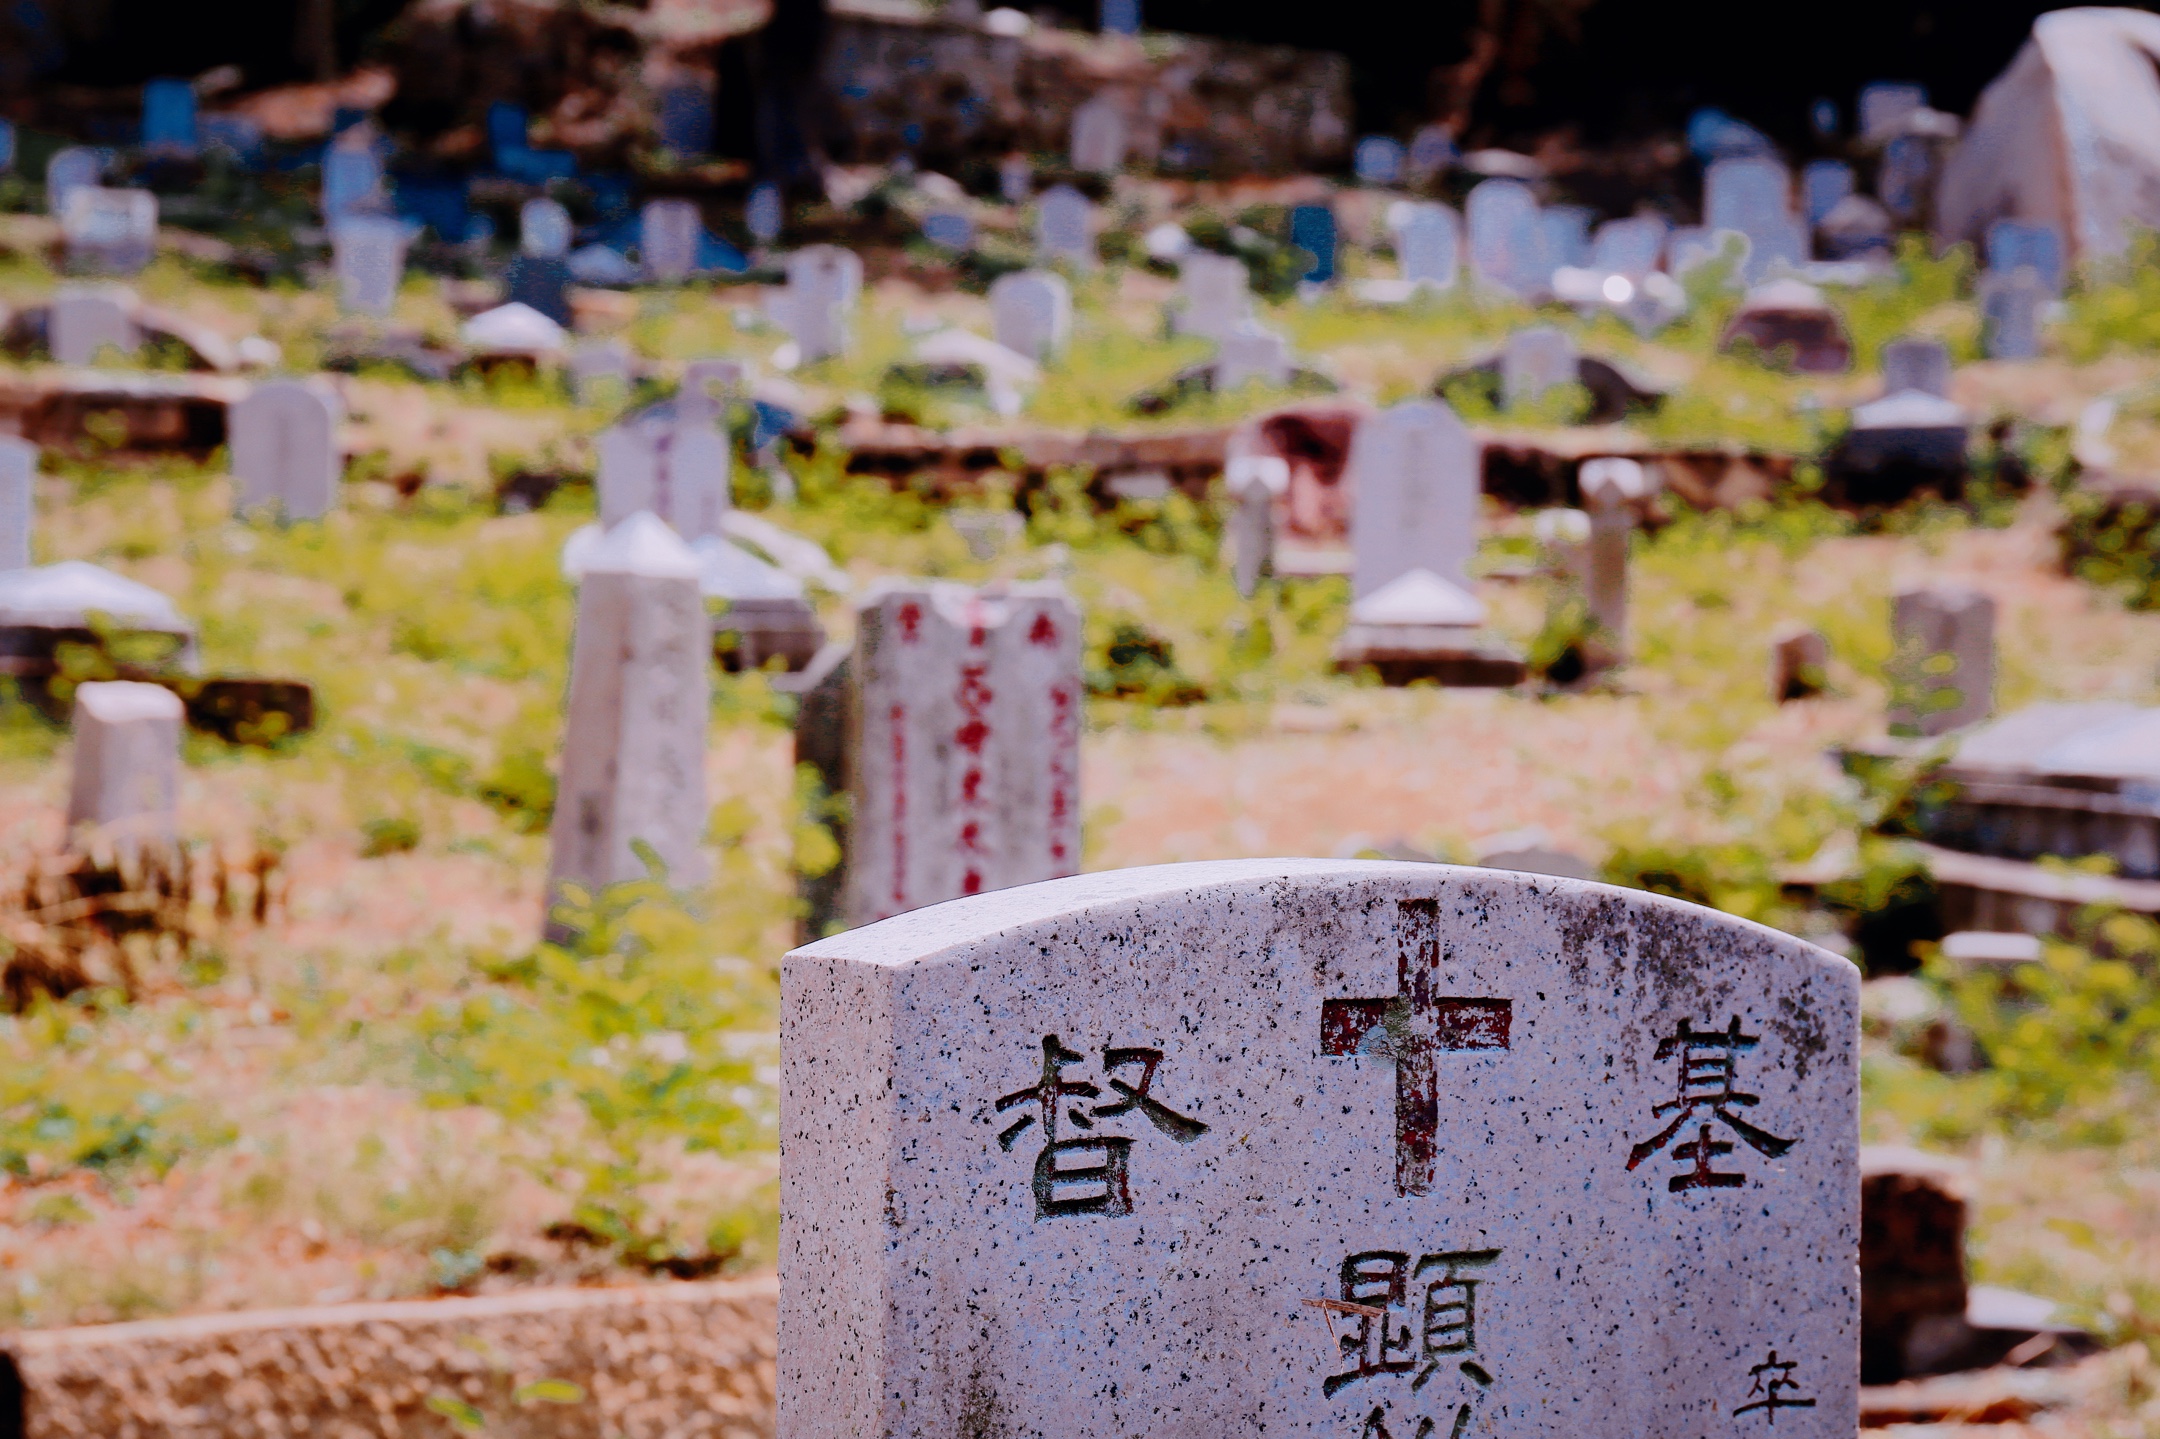 基督教徒墓园,均葬的是华人基督教徒,众多知名人物和社会名流葬于此